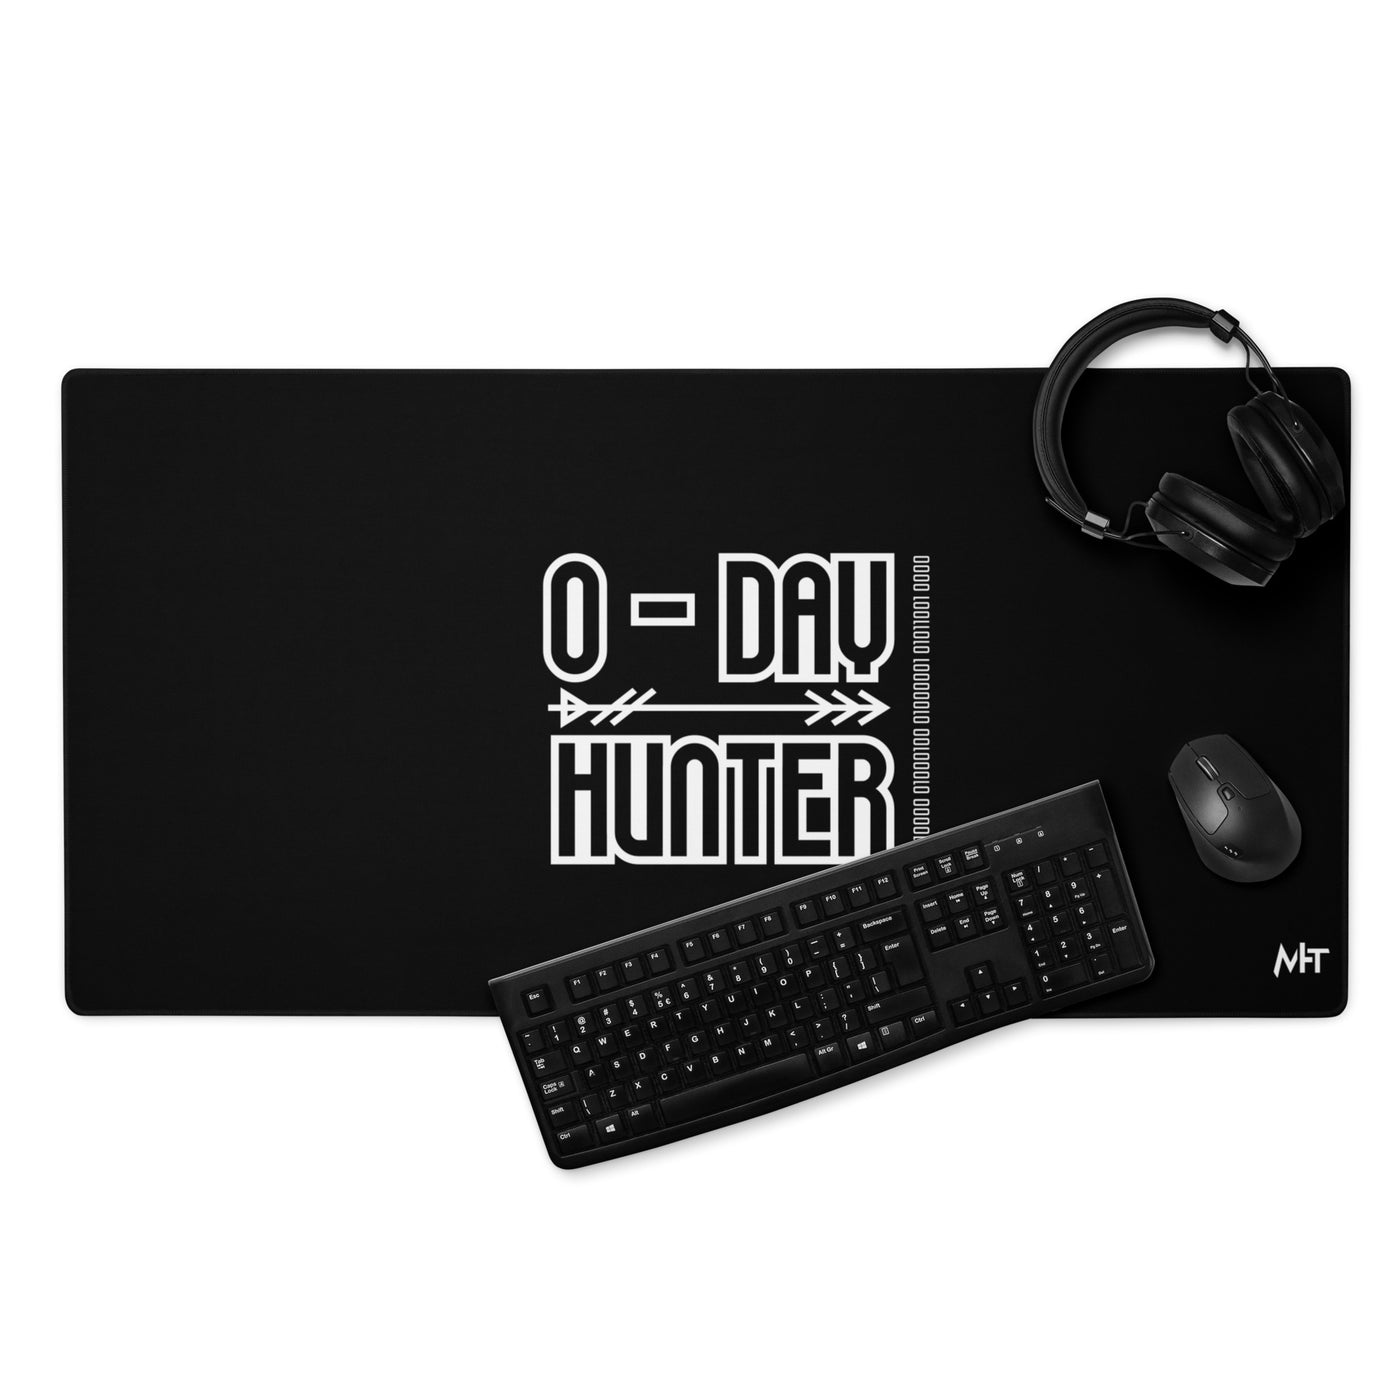 0-day hunter V6 - Desk Mat